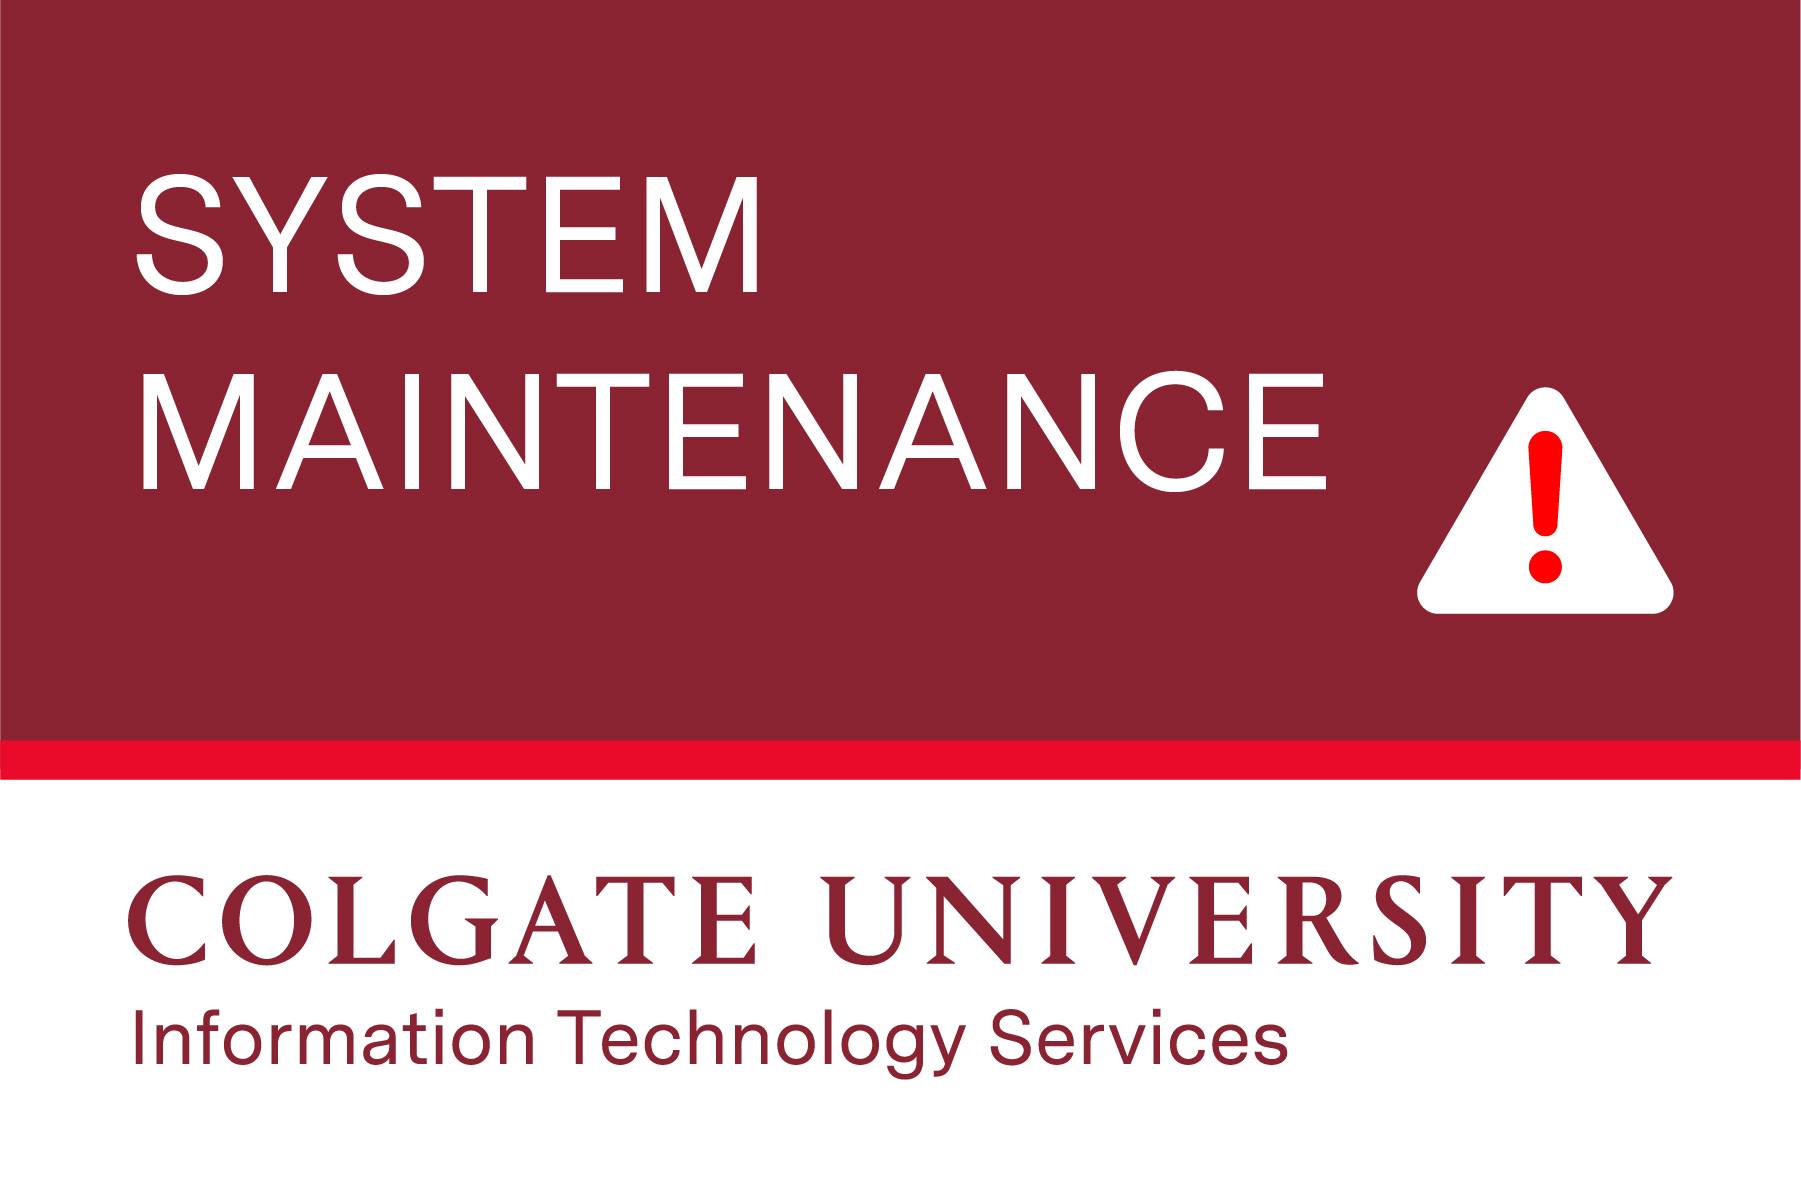 System Maintenance - Colgate University Information Technology Services